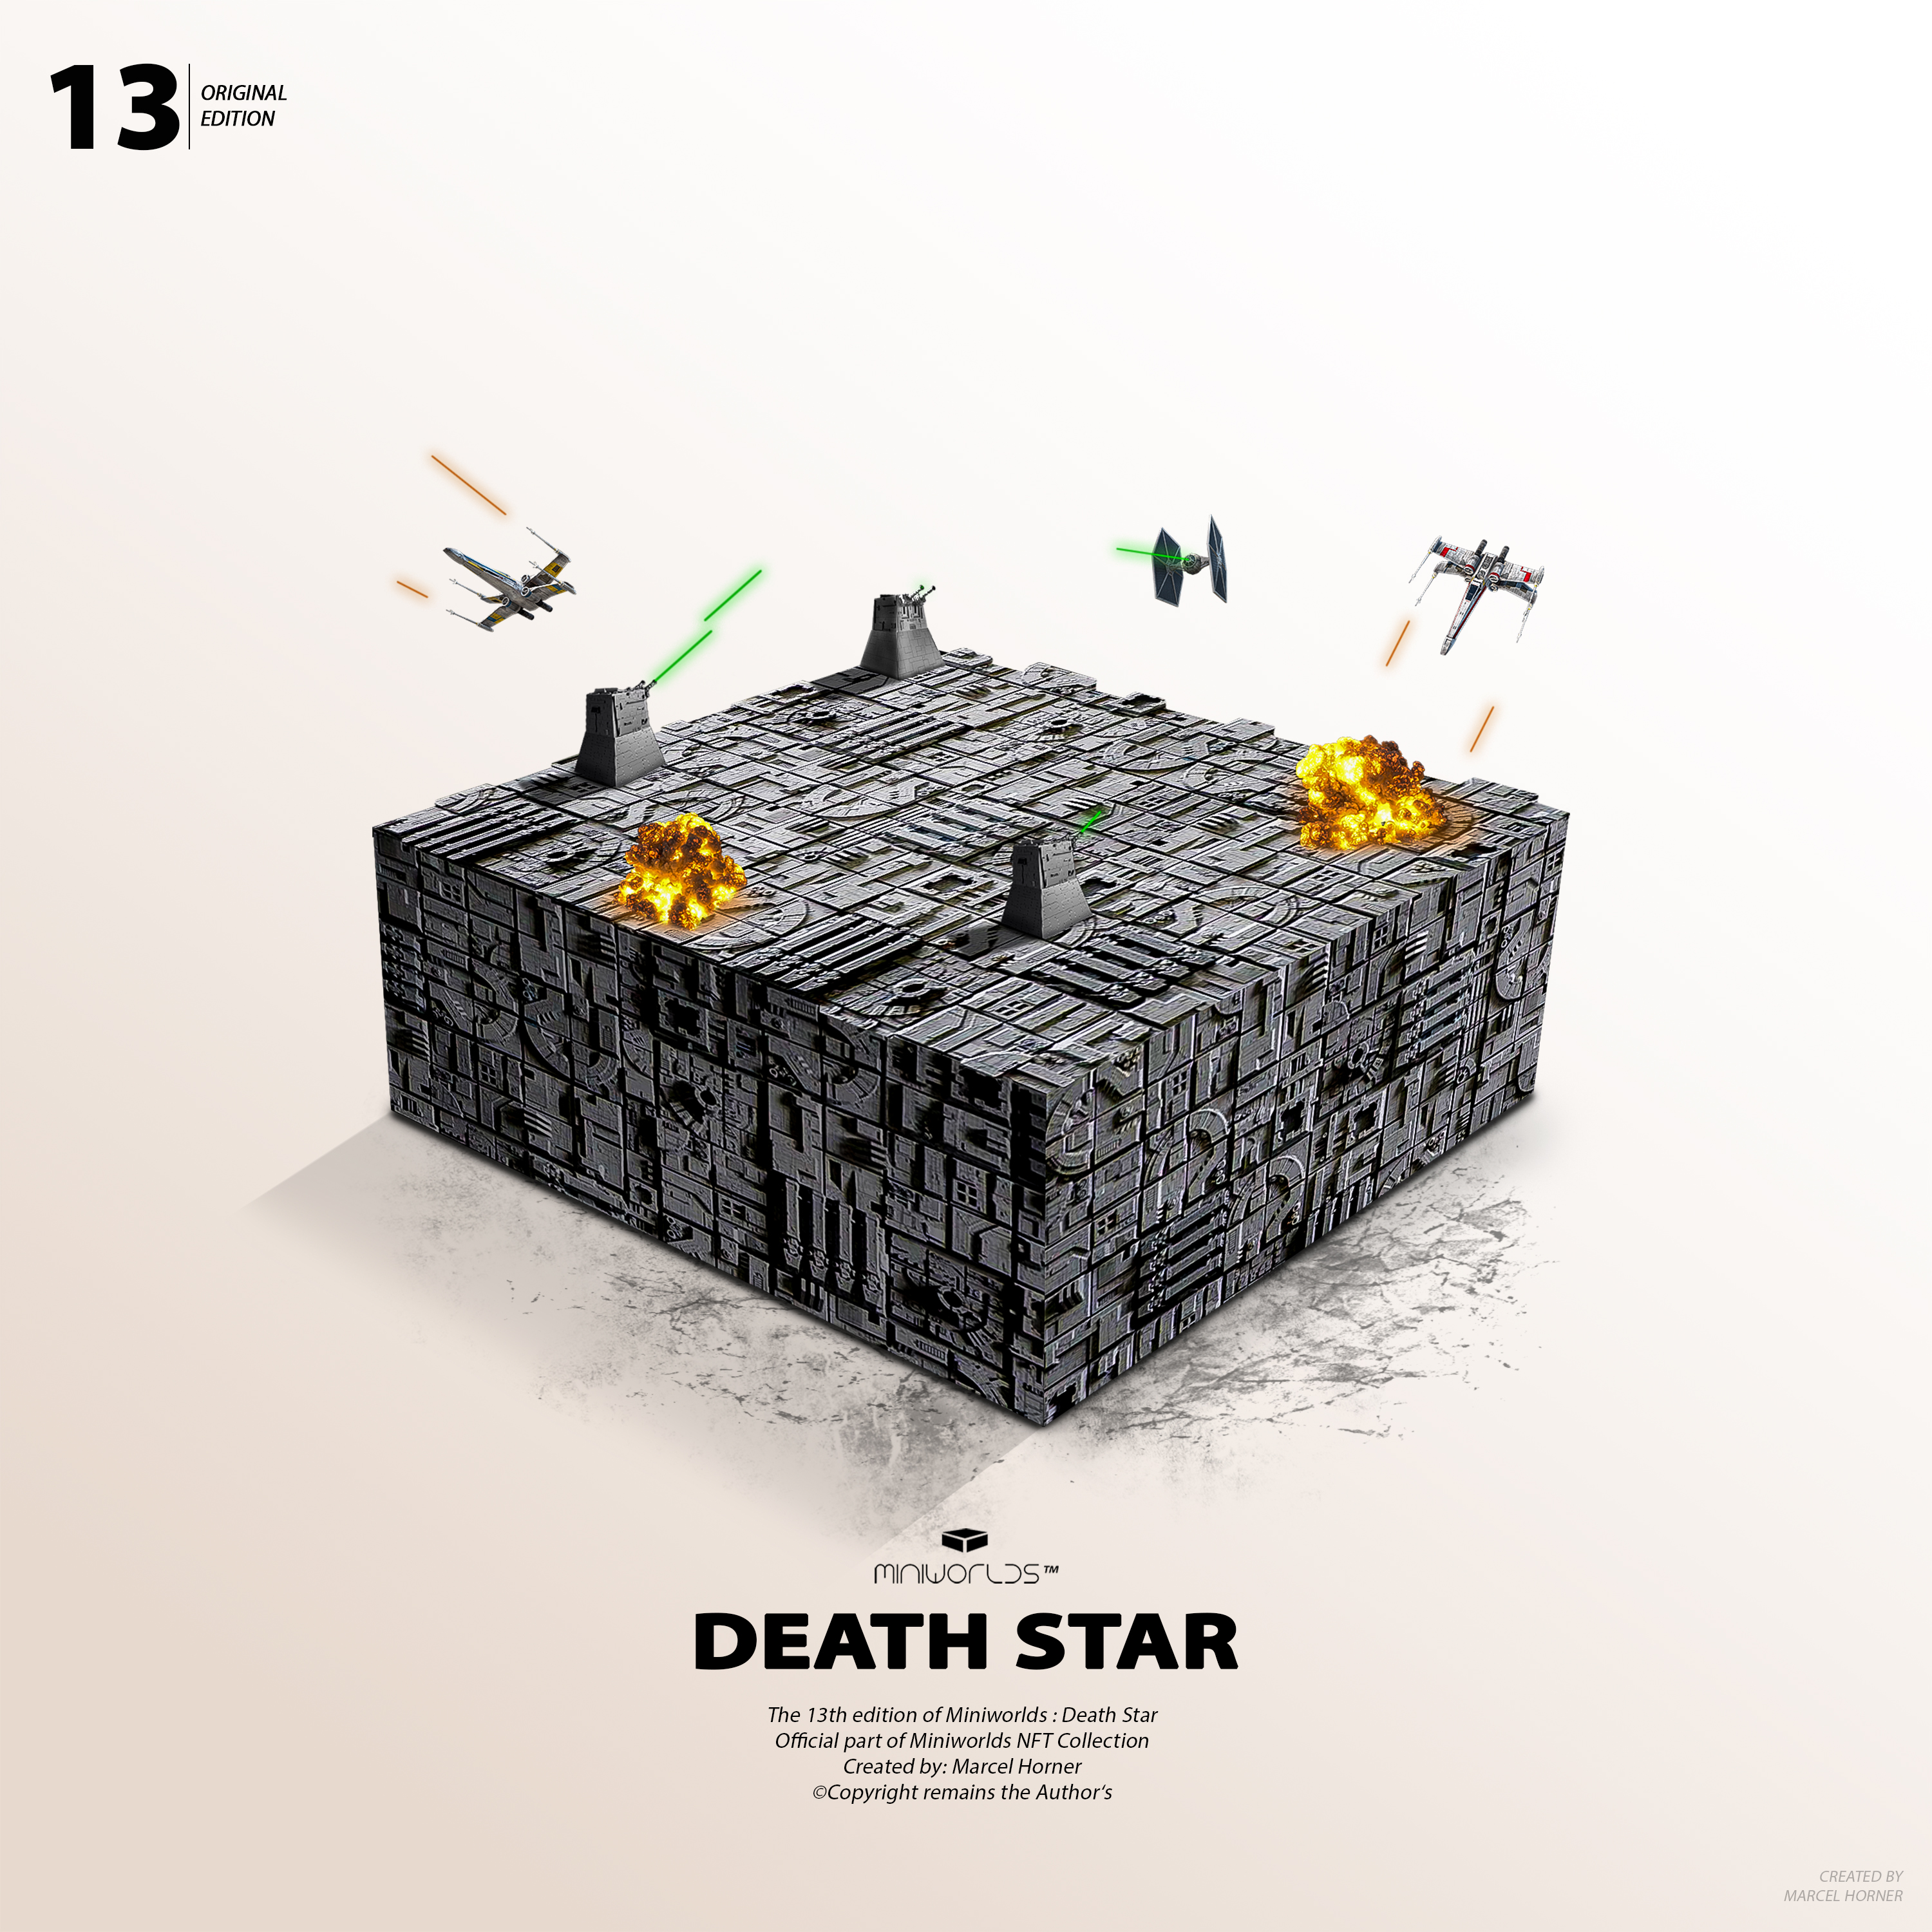 Miniworlds: Death Star #13